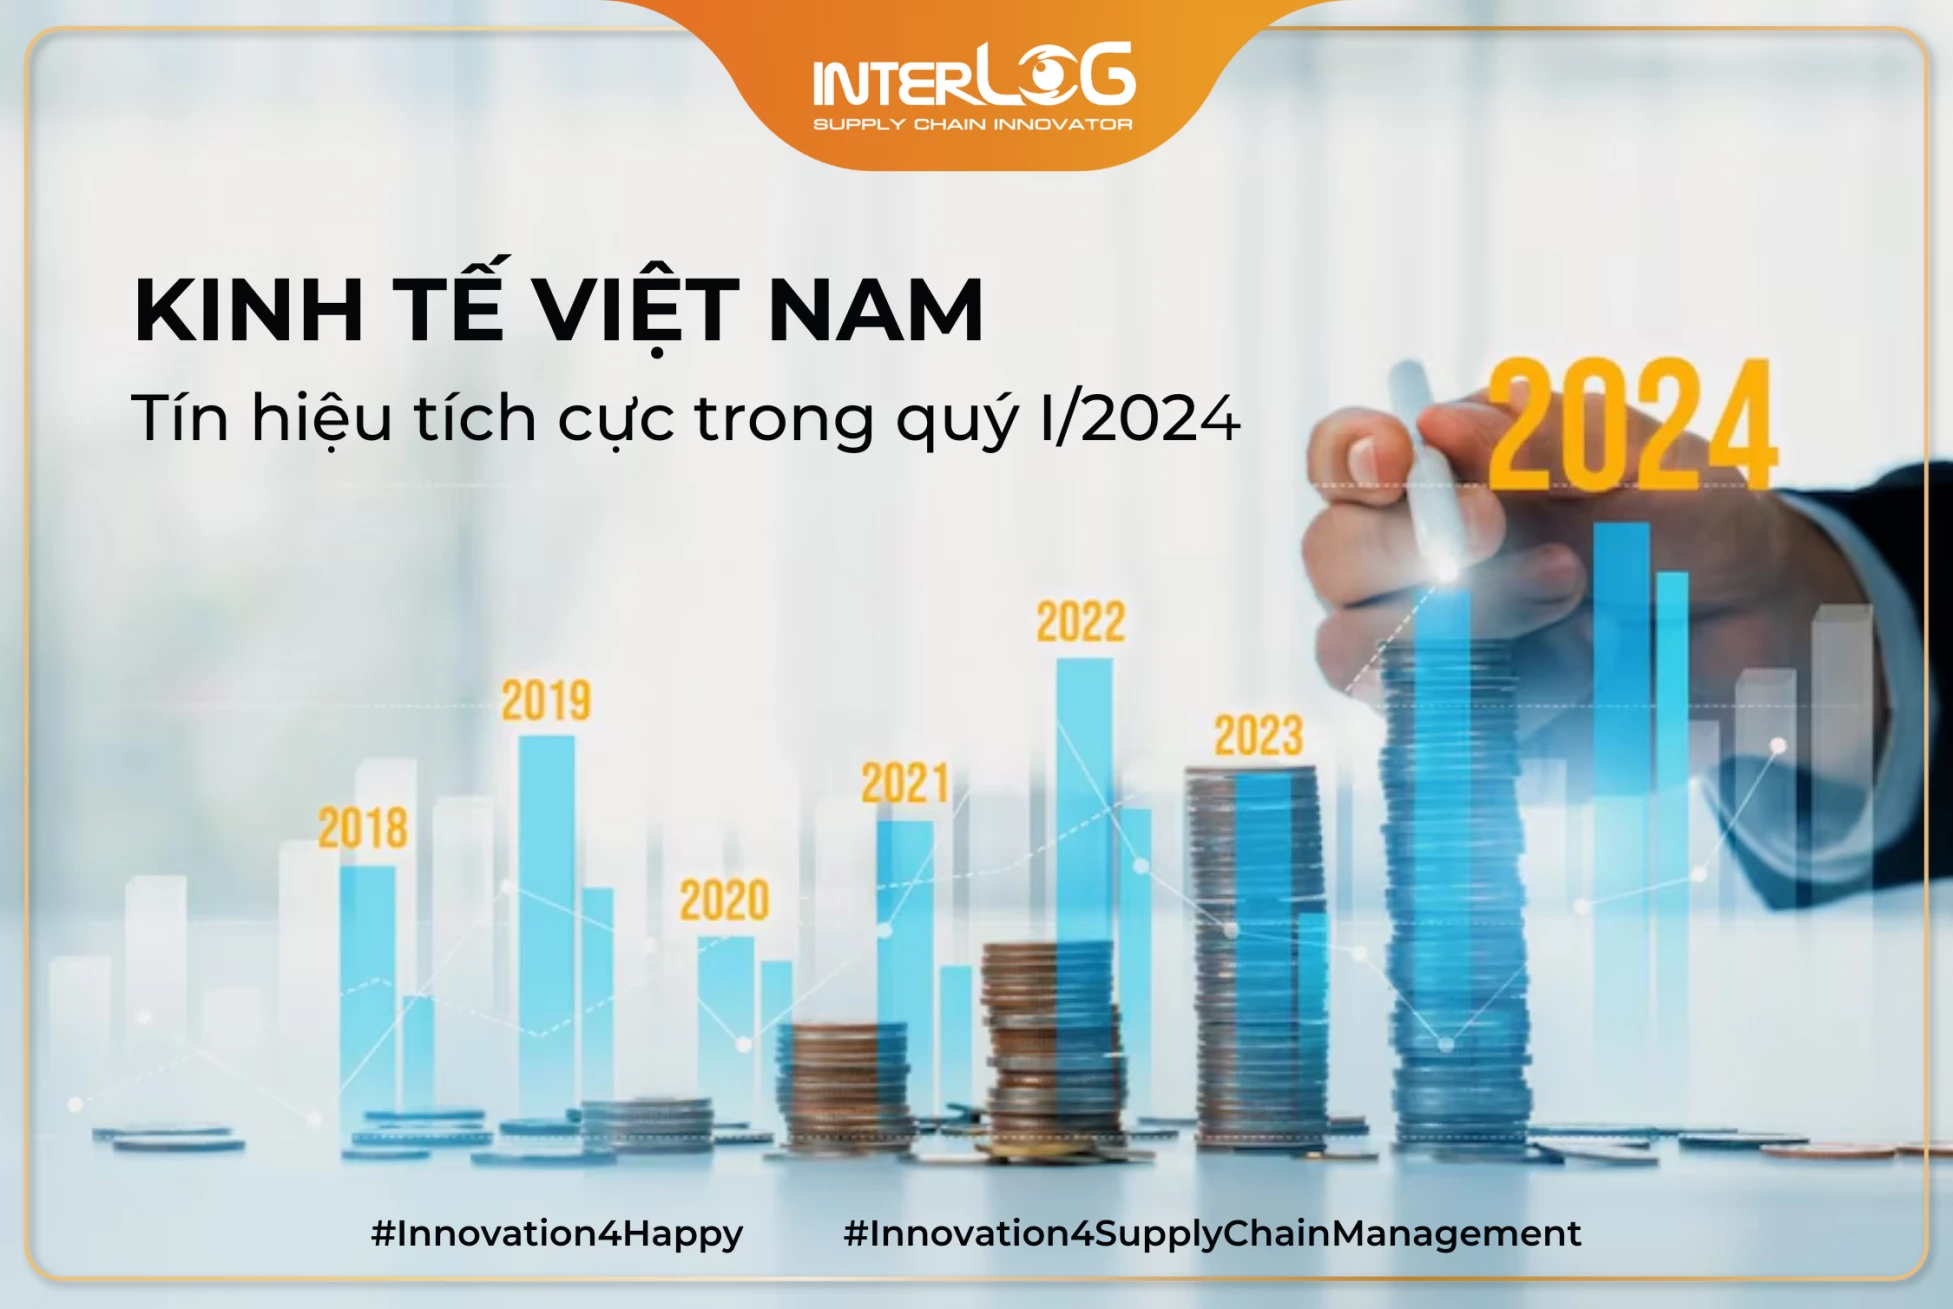 Kinh tế Việt Nam có tín hiệu tích cực trong quý I/2024